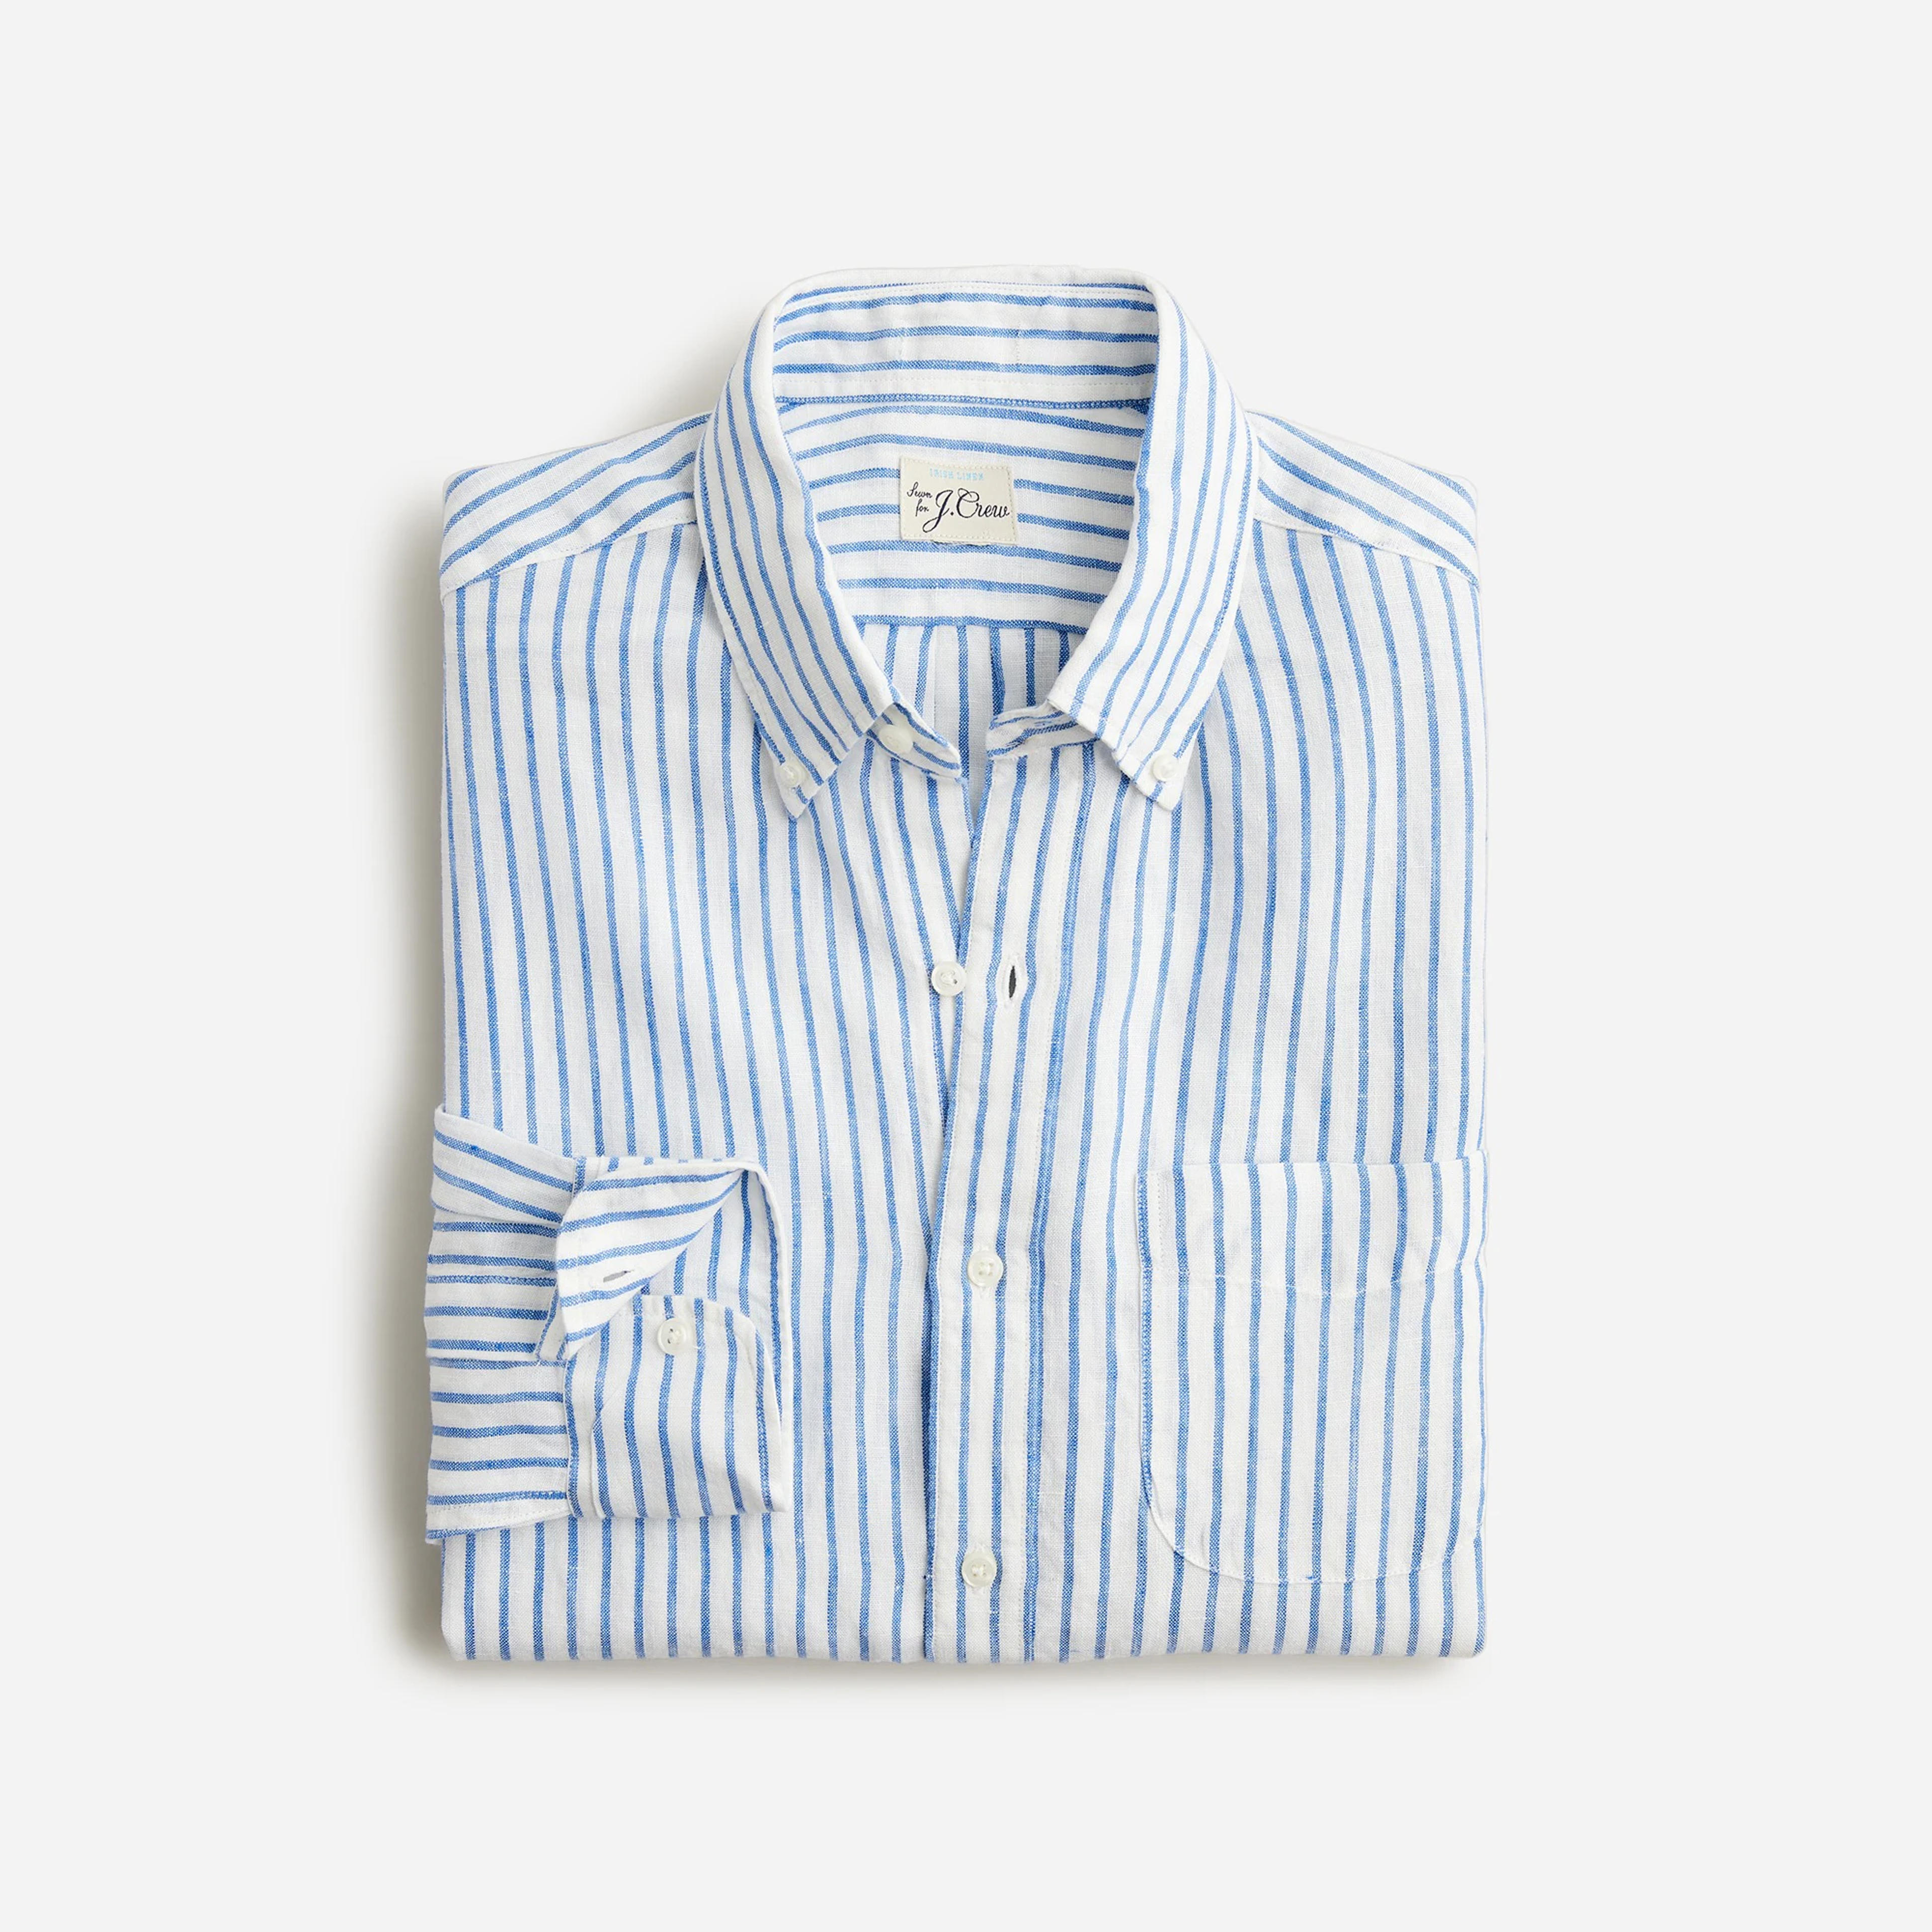 J.Crew: Baird McNutt Irish Linen Shirt For Men